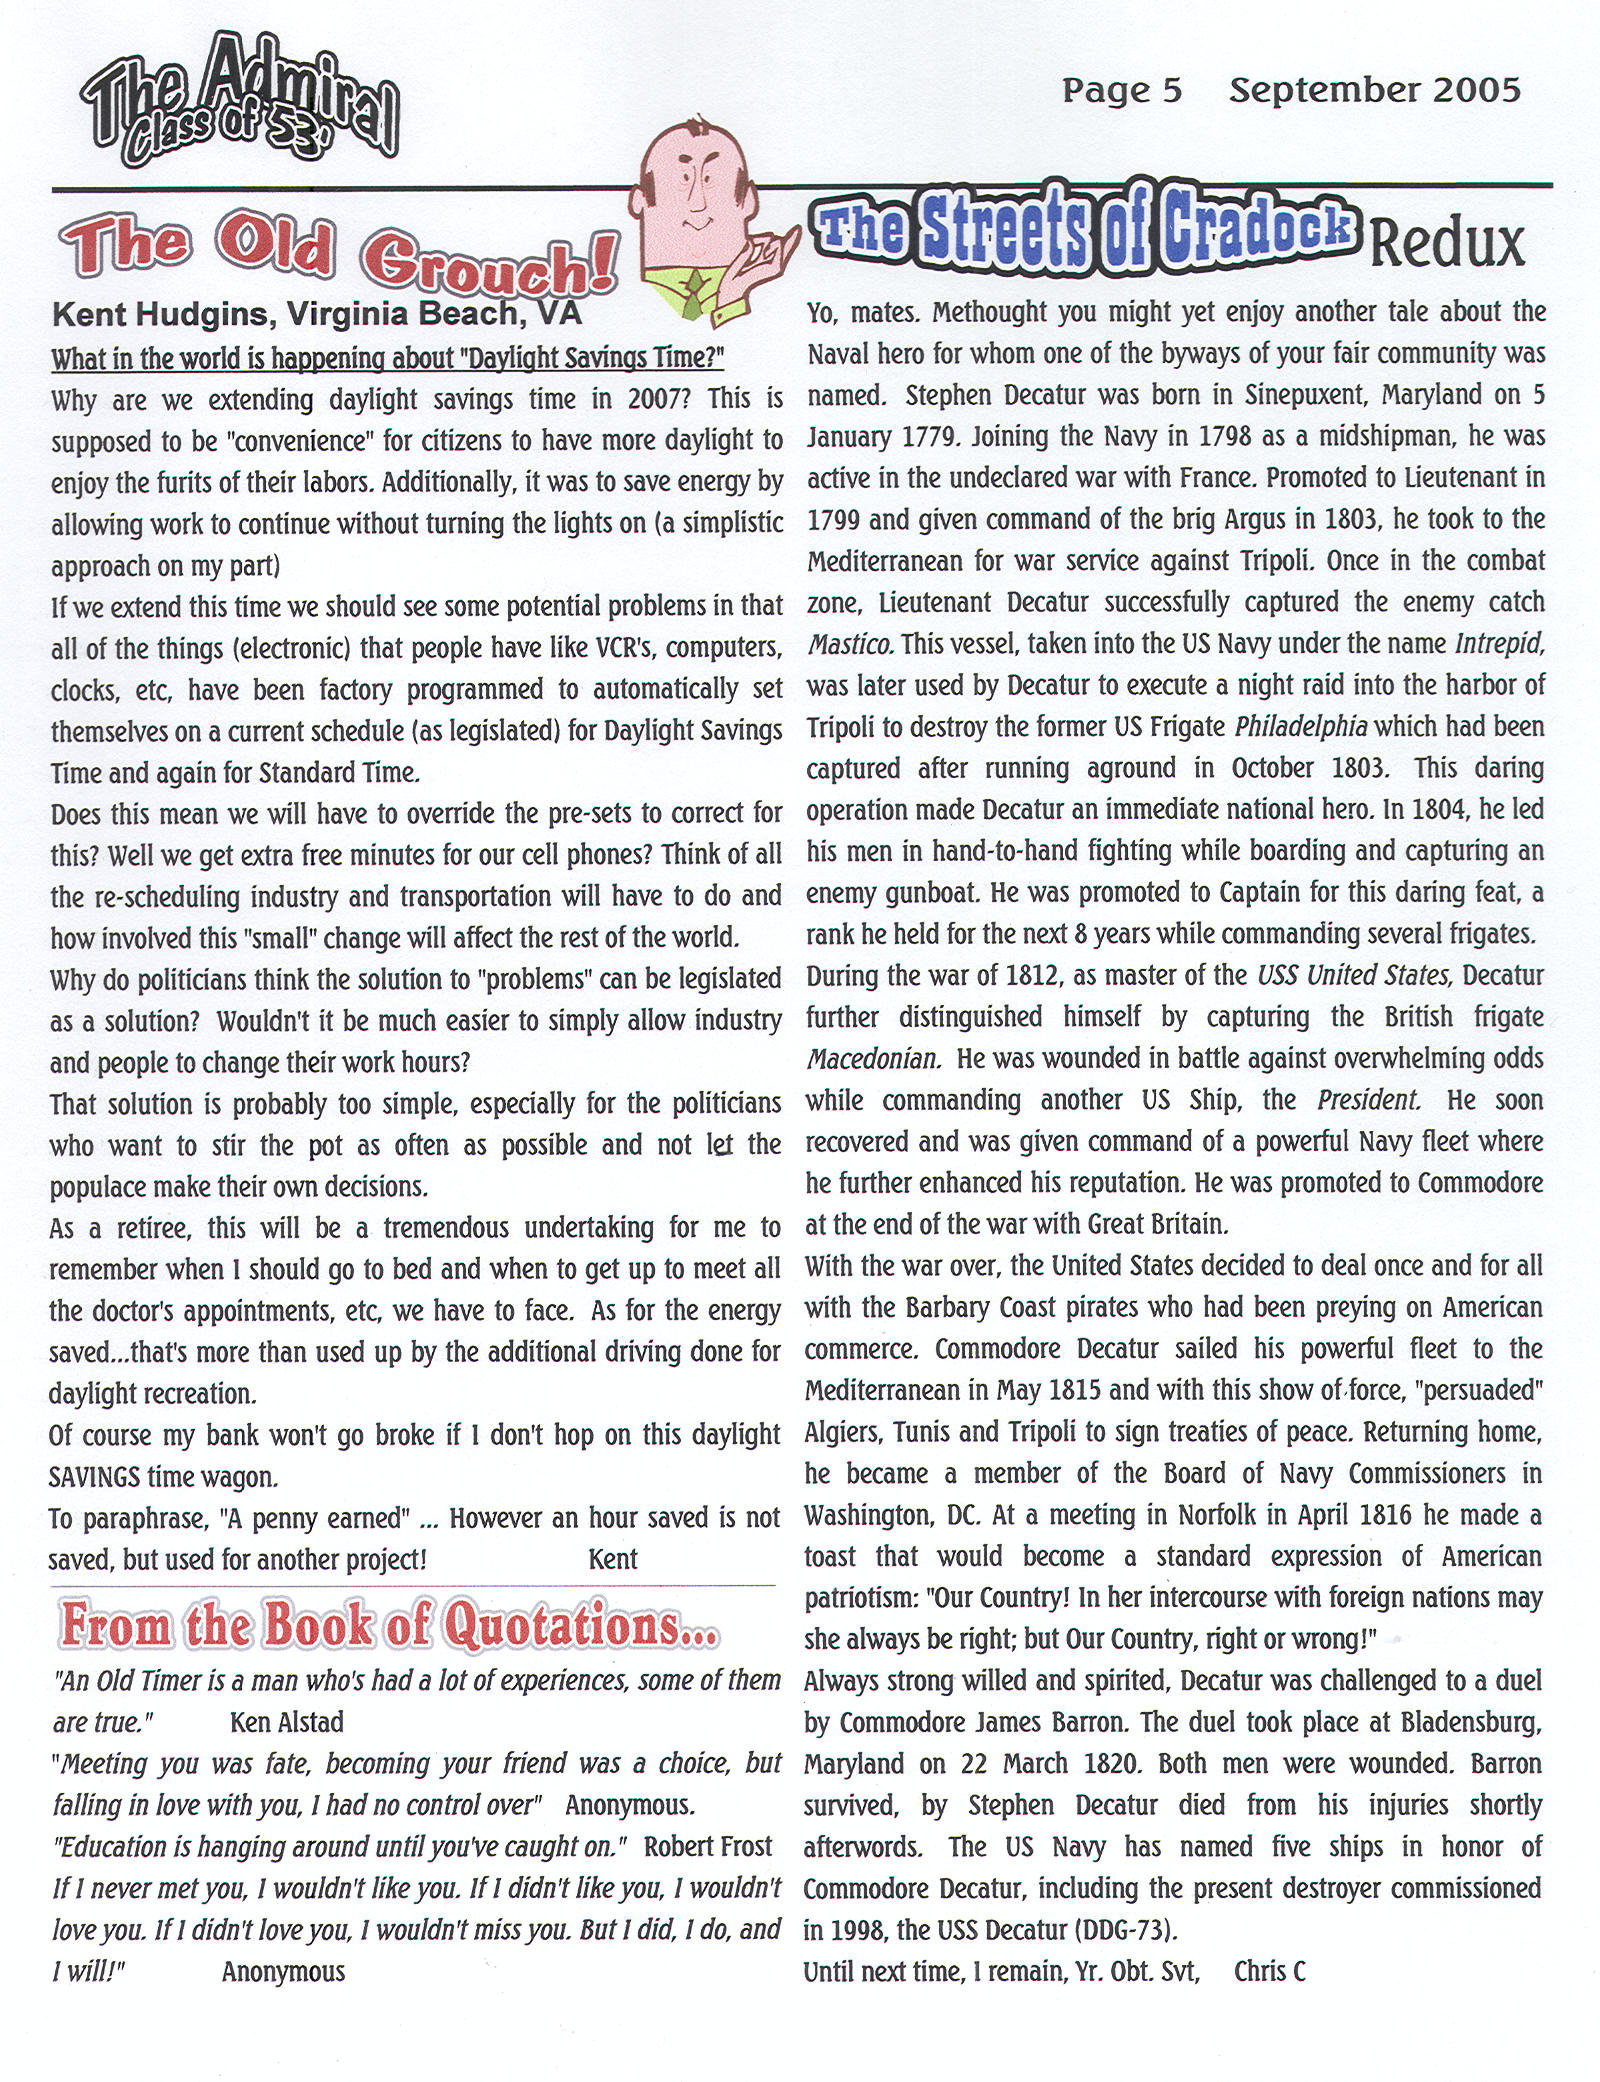 The Admiral - September 2005 - pg. 5